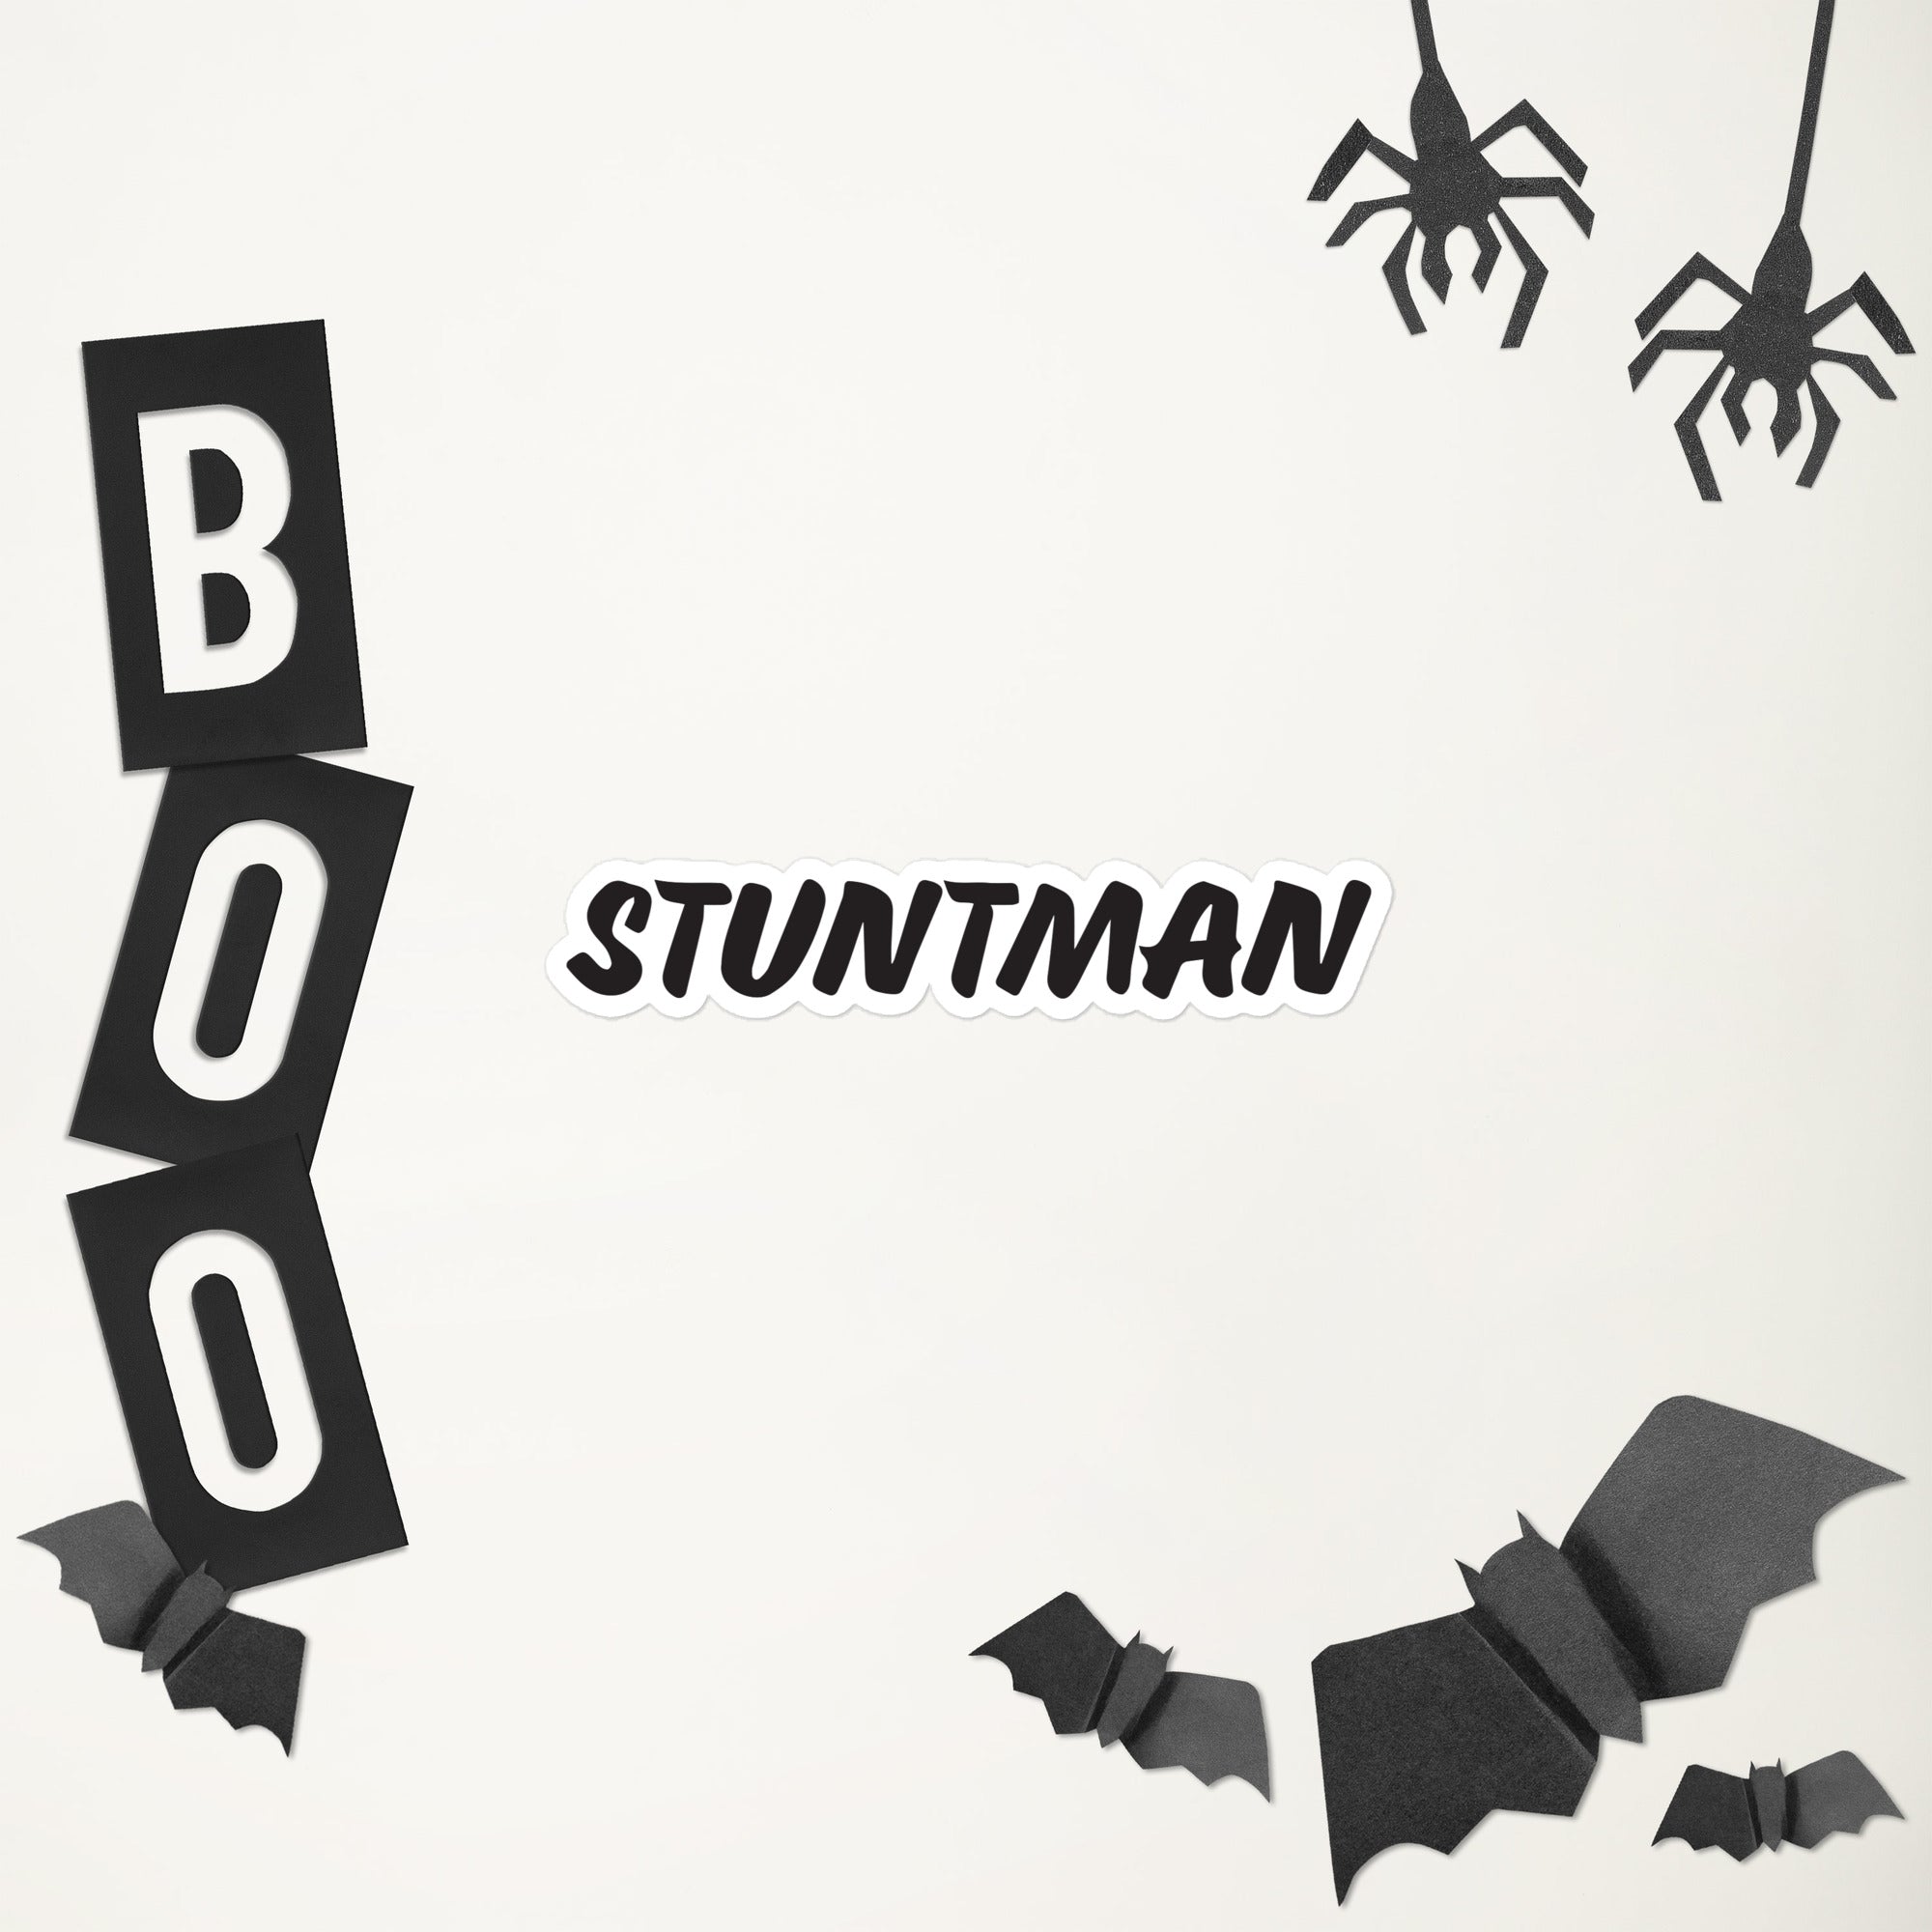 Stuntman Bubble-free sticker